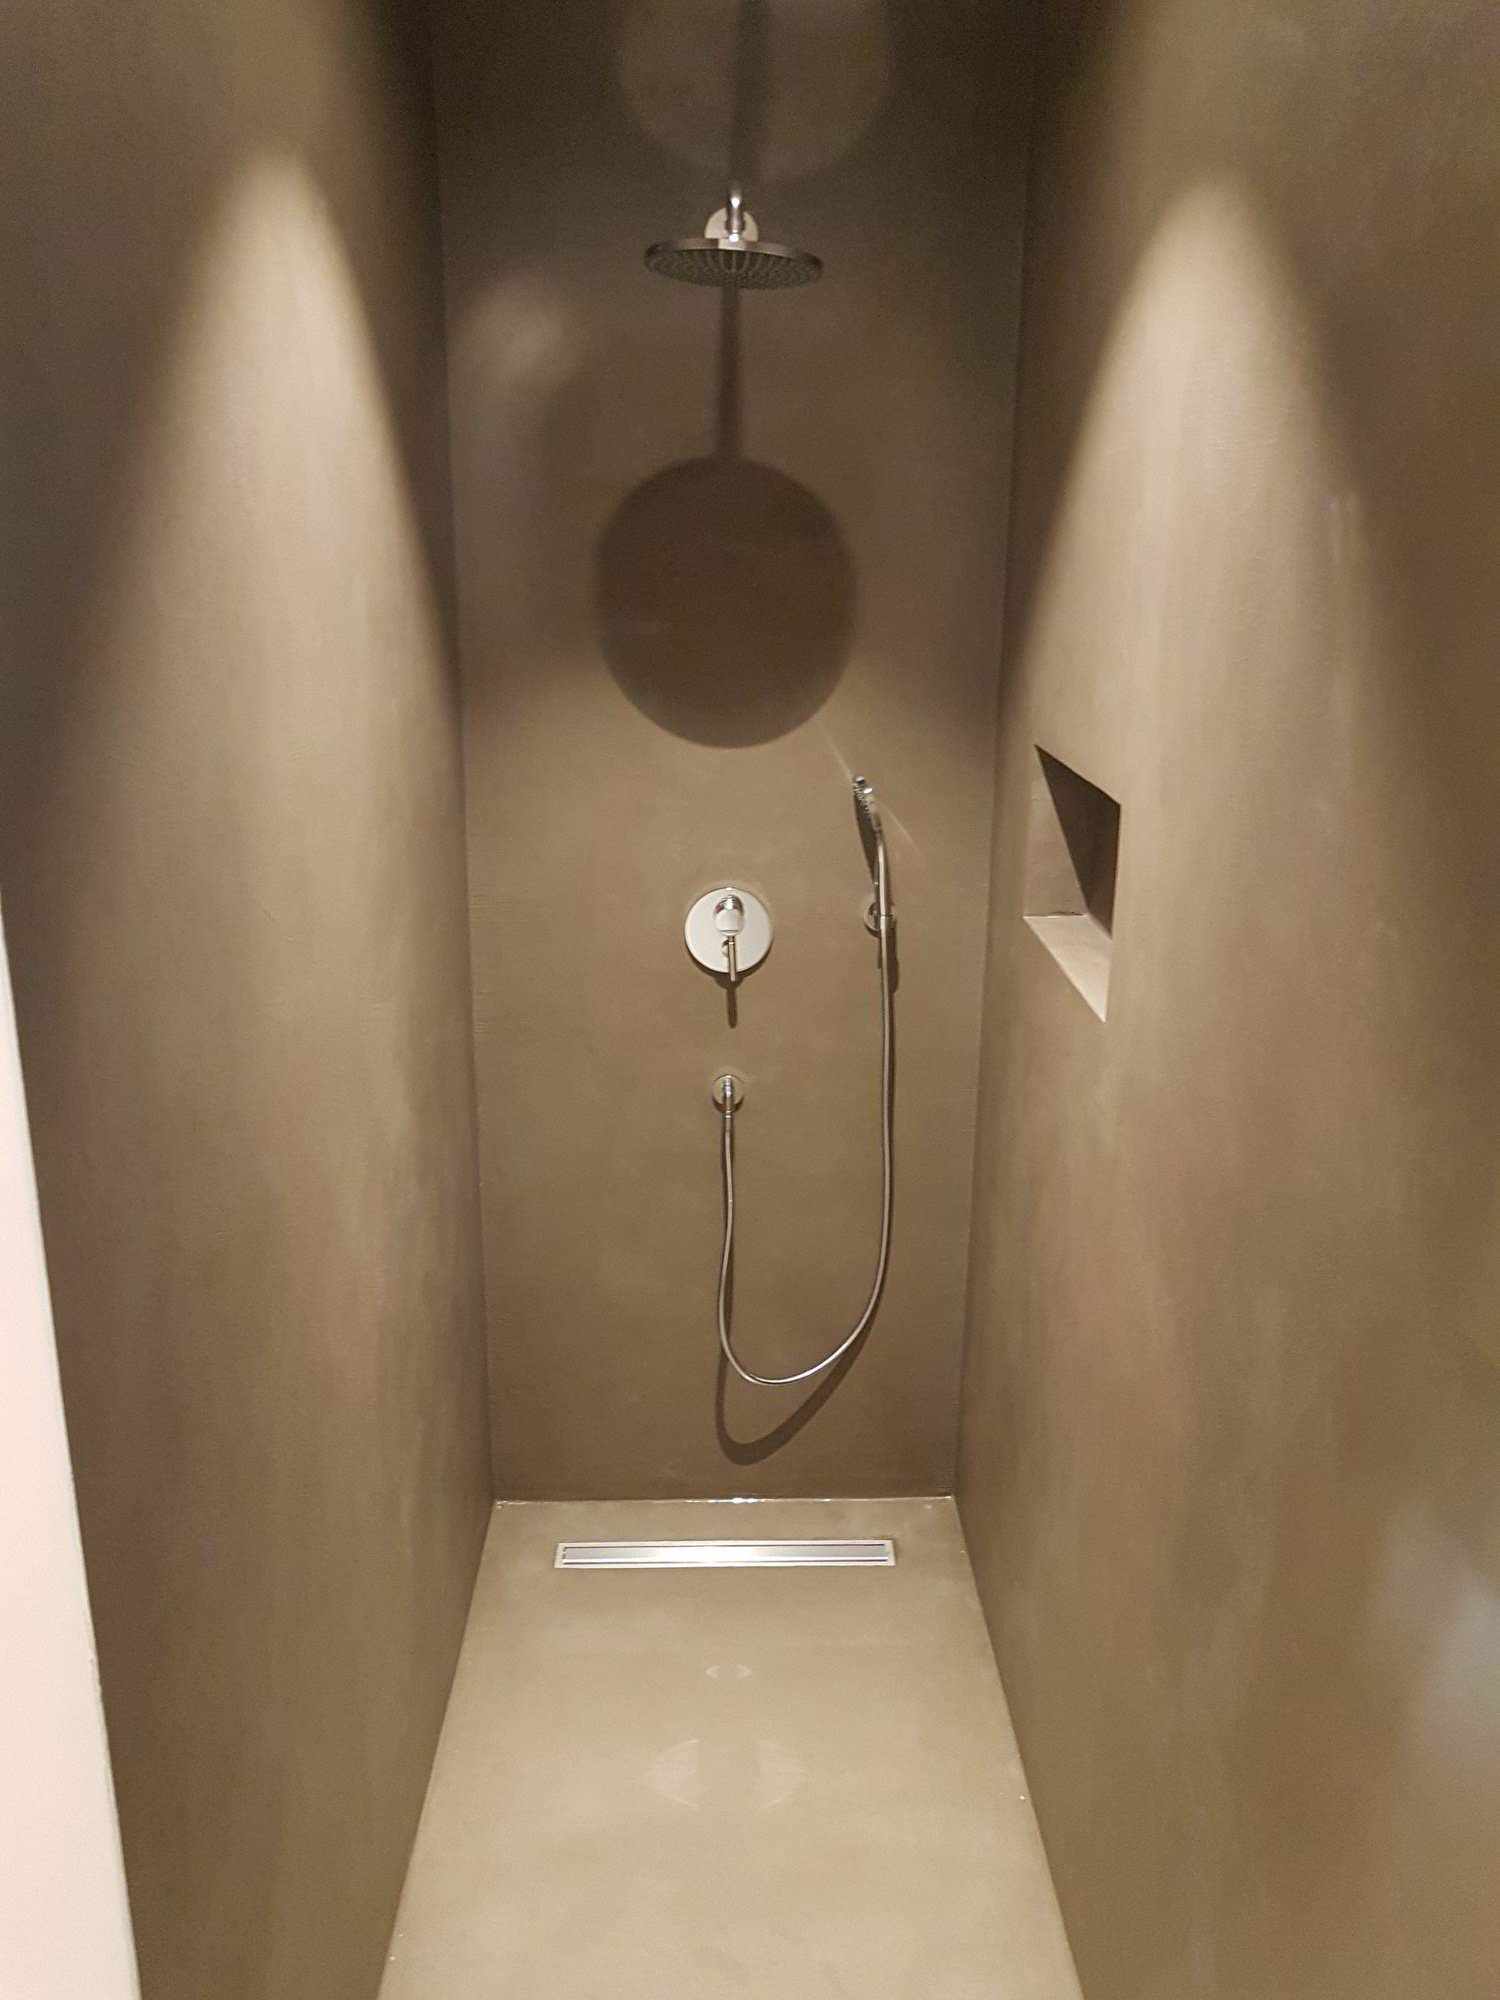 Lett mikrosementbelegg på vegger og gulv i dusjen